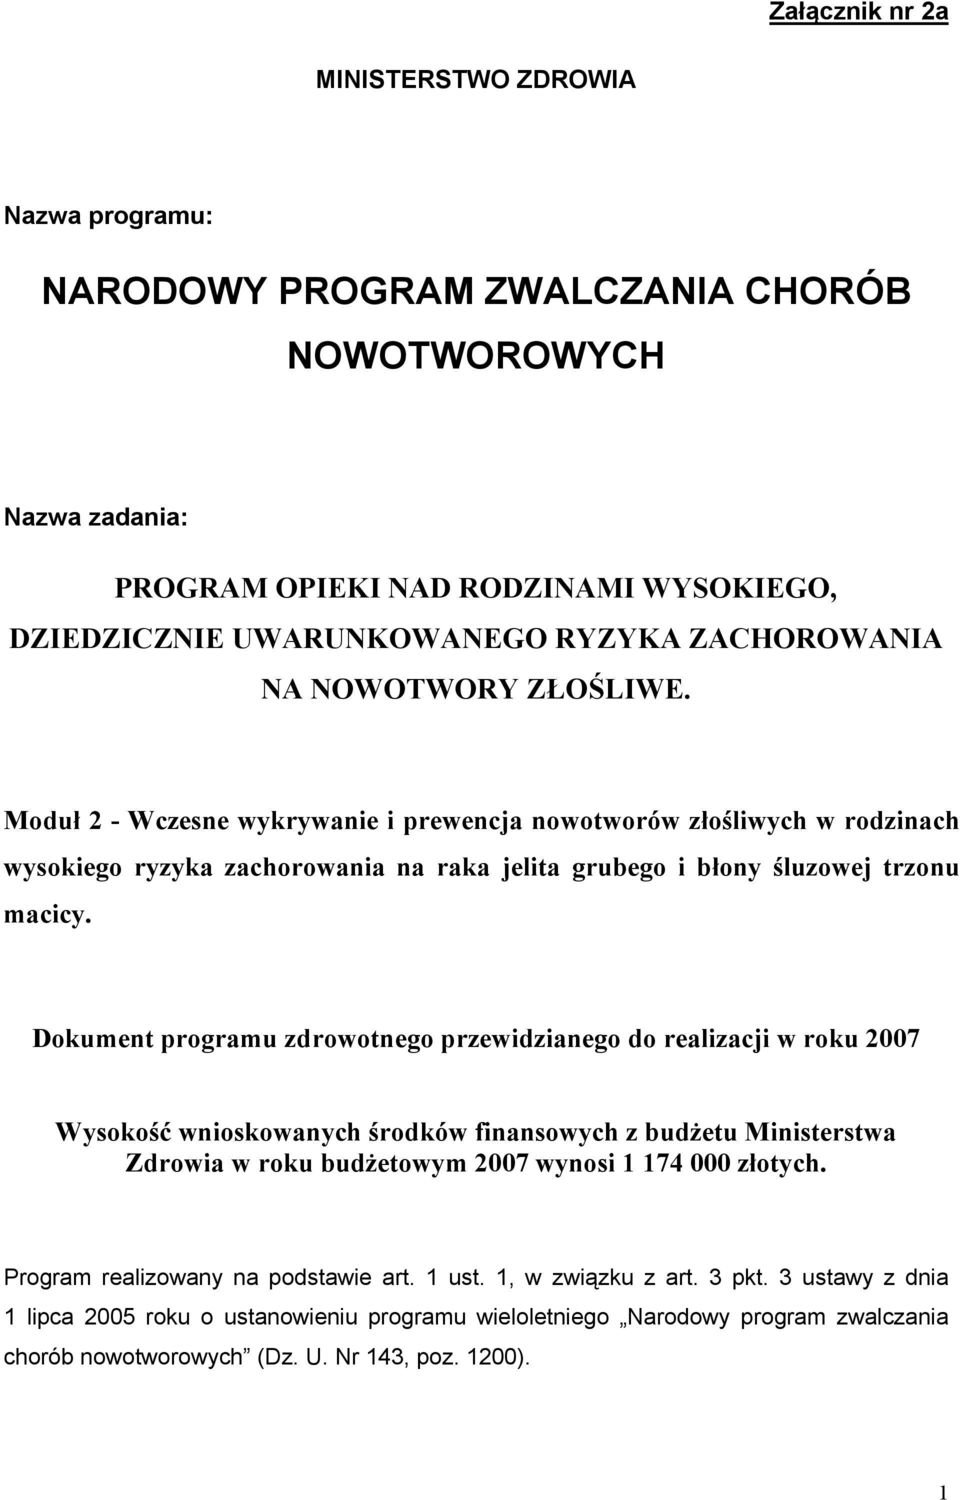 Dokument programu zdrowotnego przewidzianego do realizacji w roku 2007 Wysokość wnioskowanych środków finansowych z budżetu Ministerstwa Zdrowia w roku budżetowym 2007 wynosi 1 174 000 złotych.